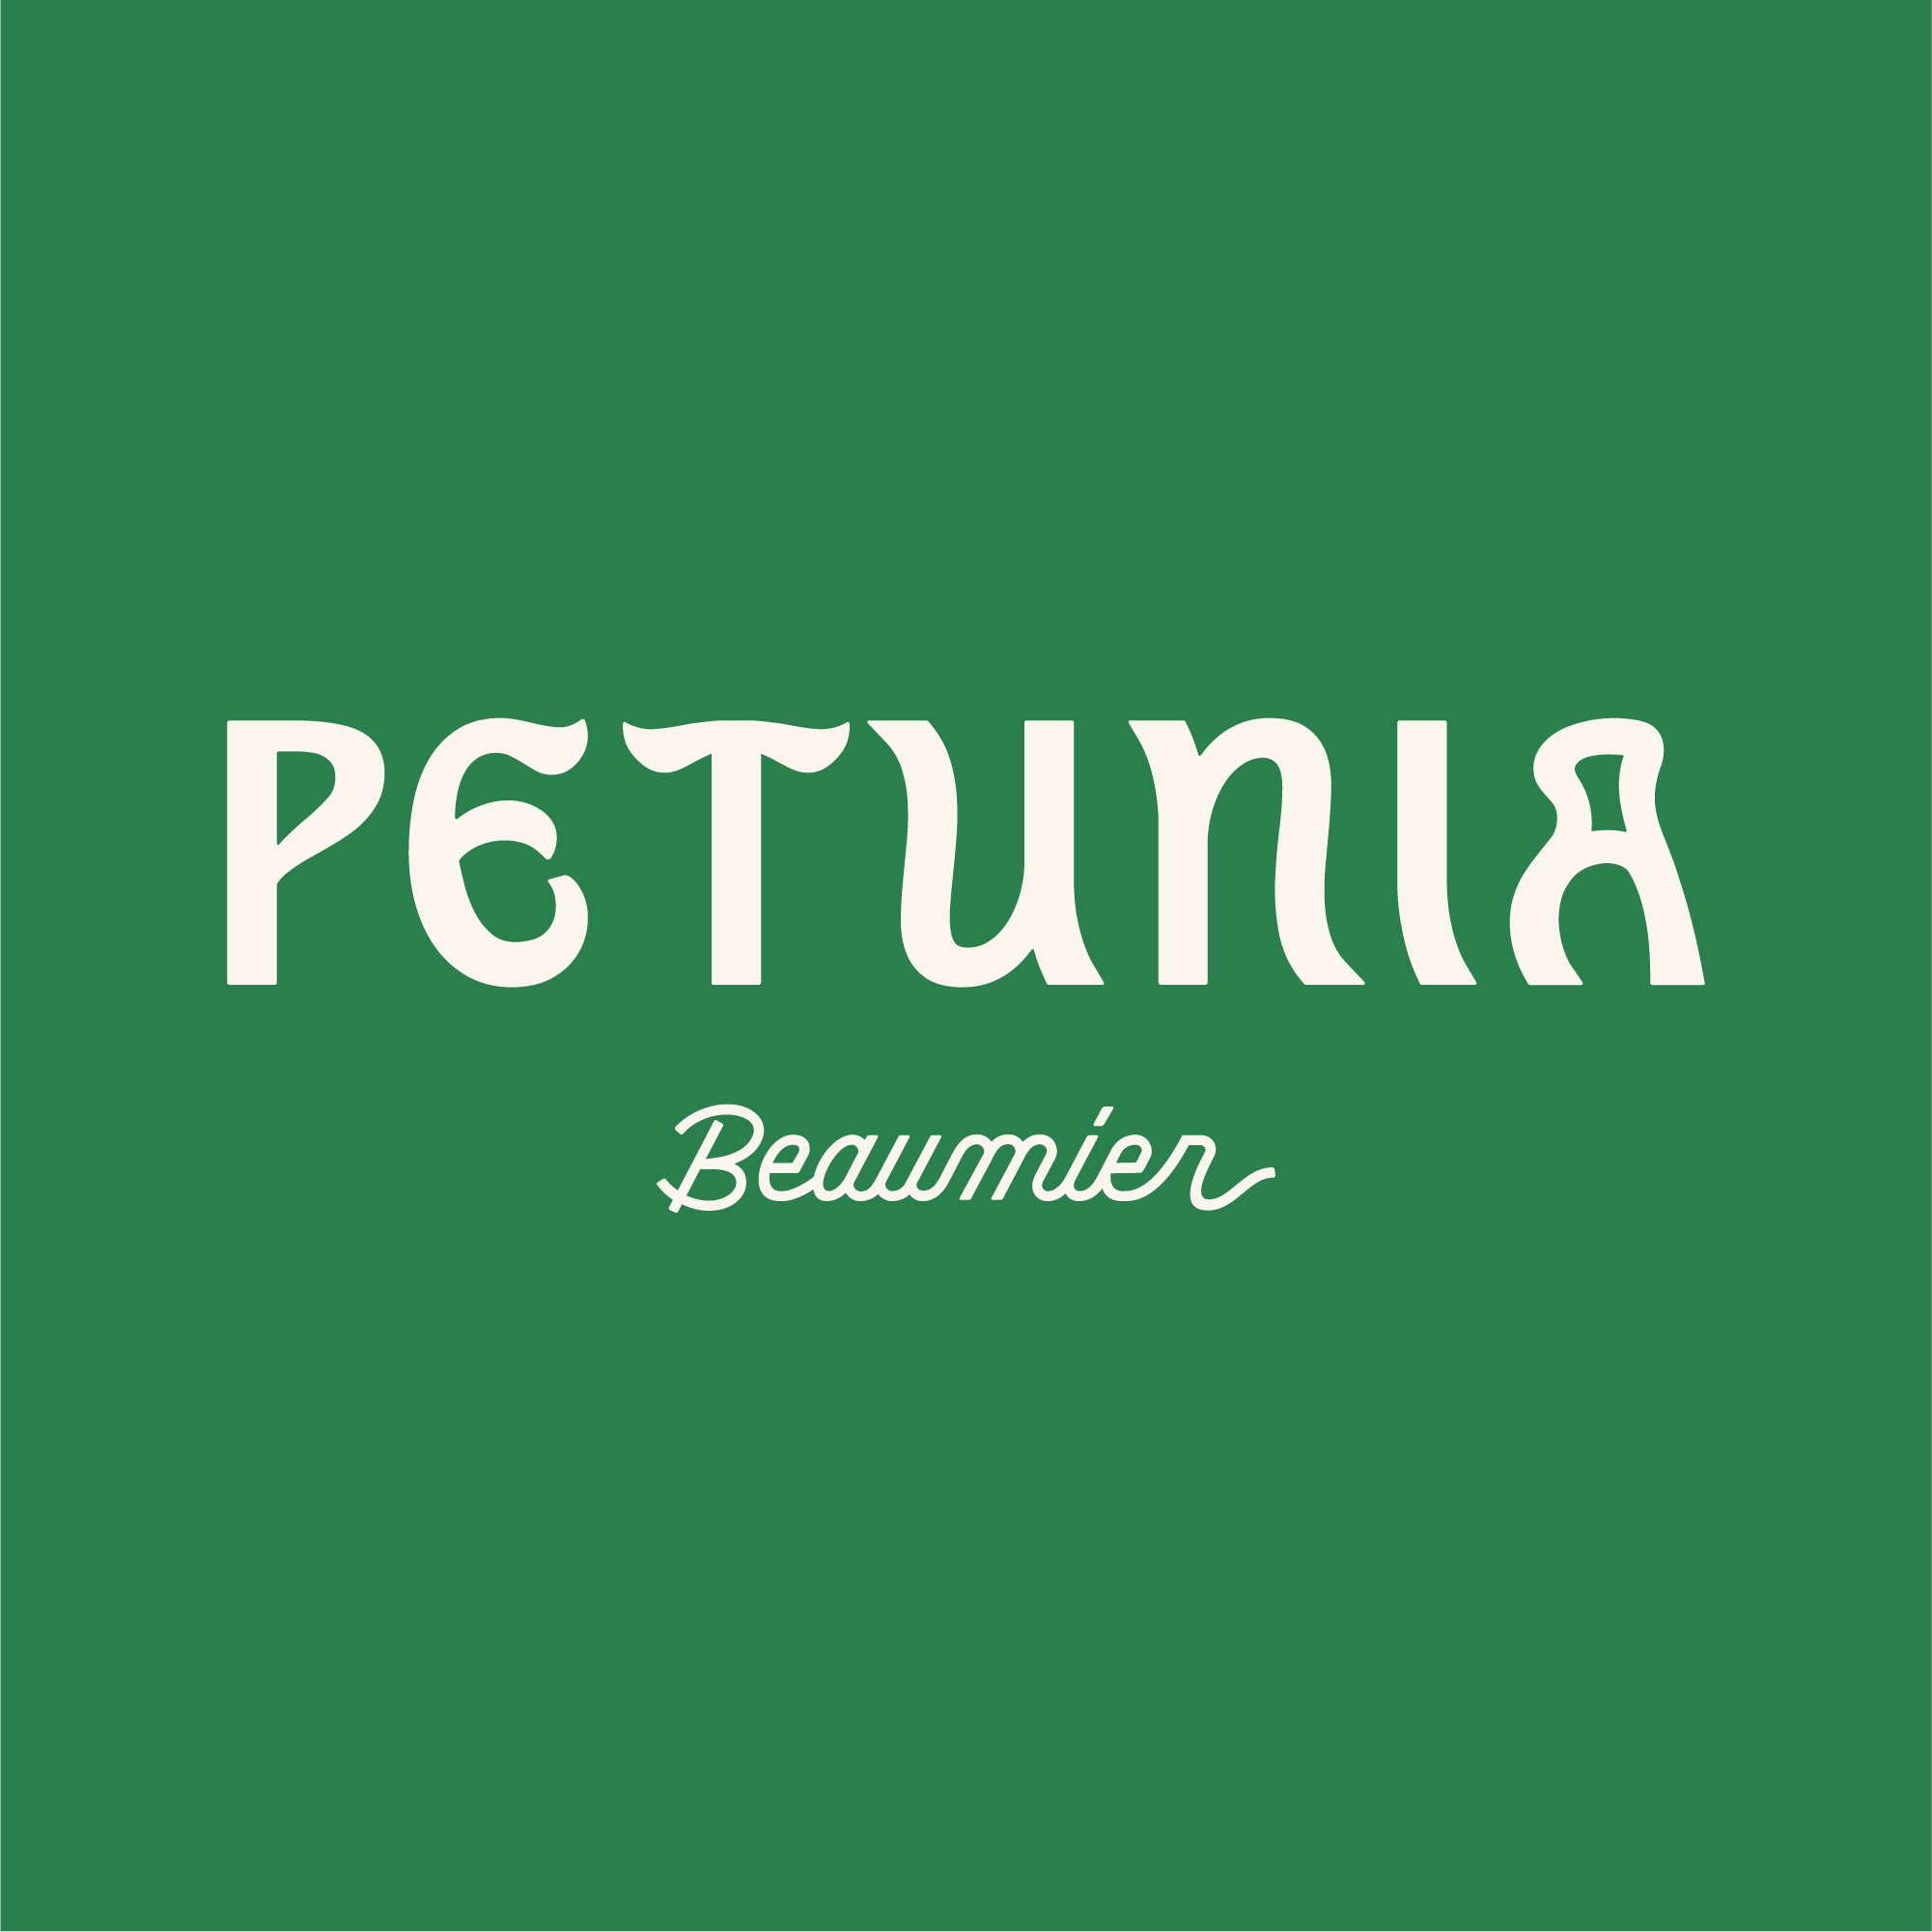 Petunia Ibiza, ein Hotel der Gruppe Beaumier 